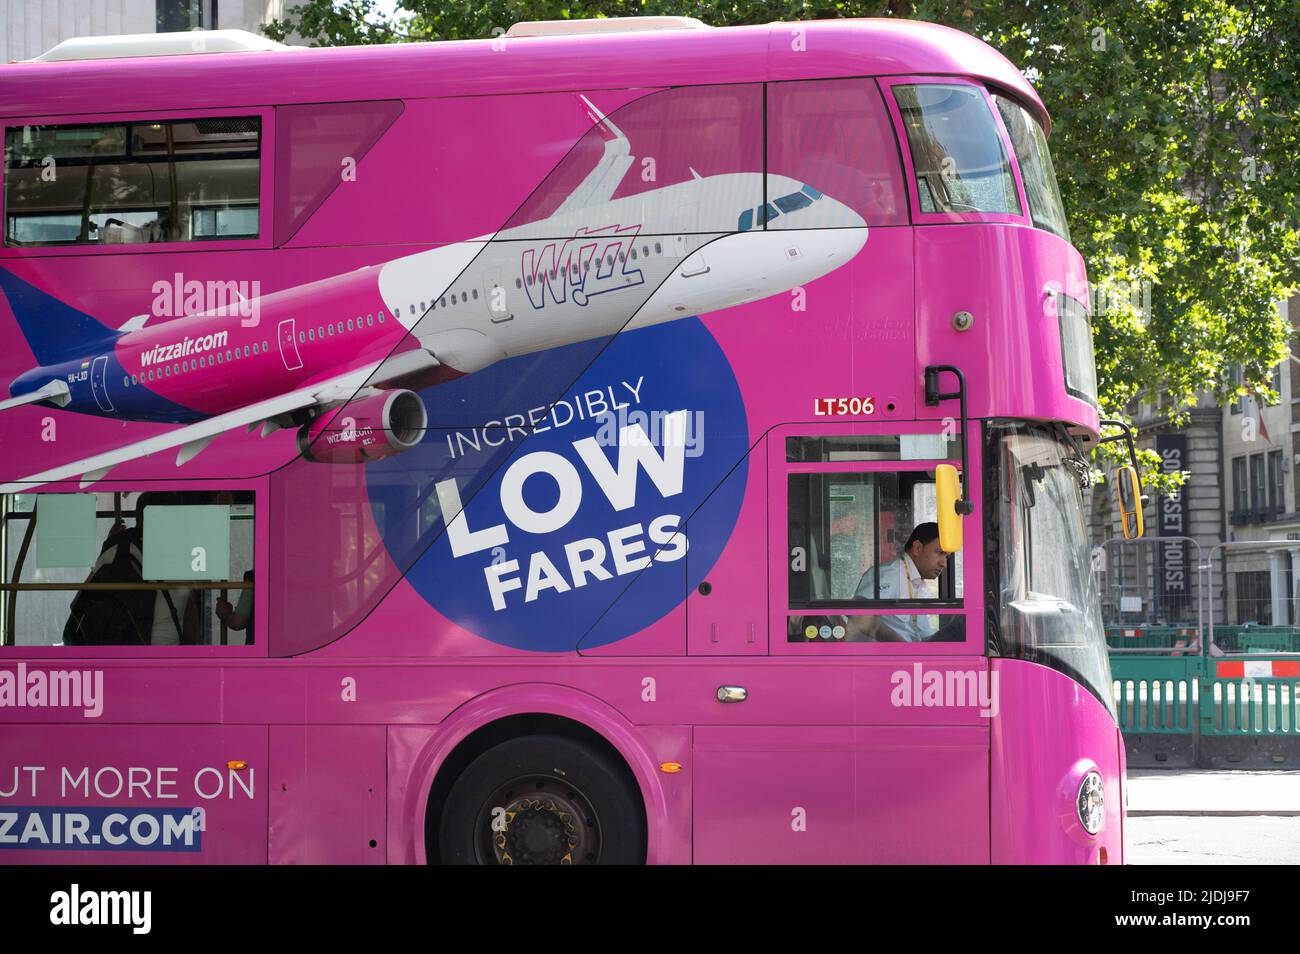 Juni 21.. Streik in der Bahn und U-Bahn in London. Bus am Bahnhof London Bridge, mit Werbung für Whizz Air. Stockfoto